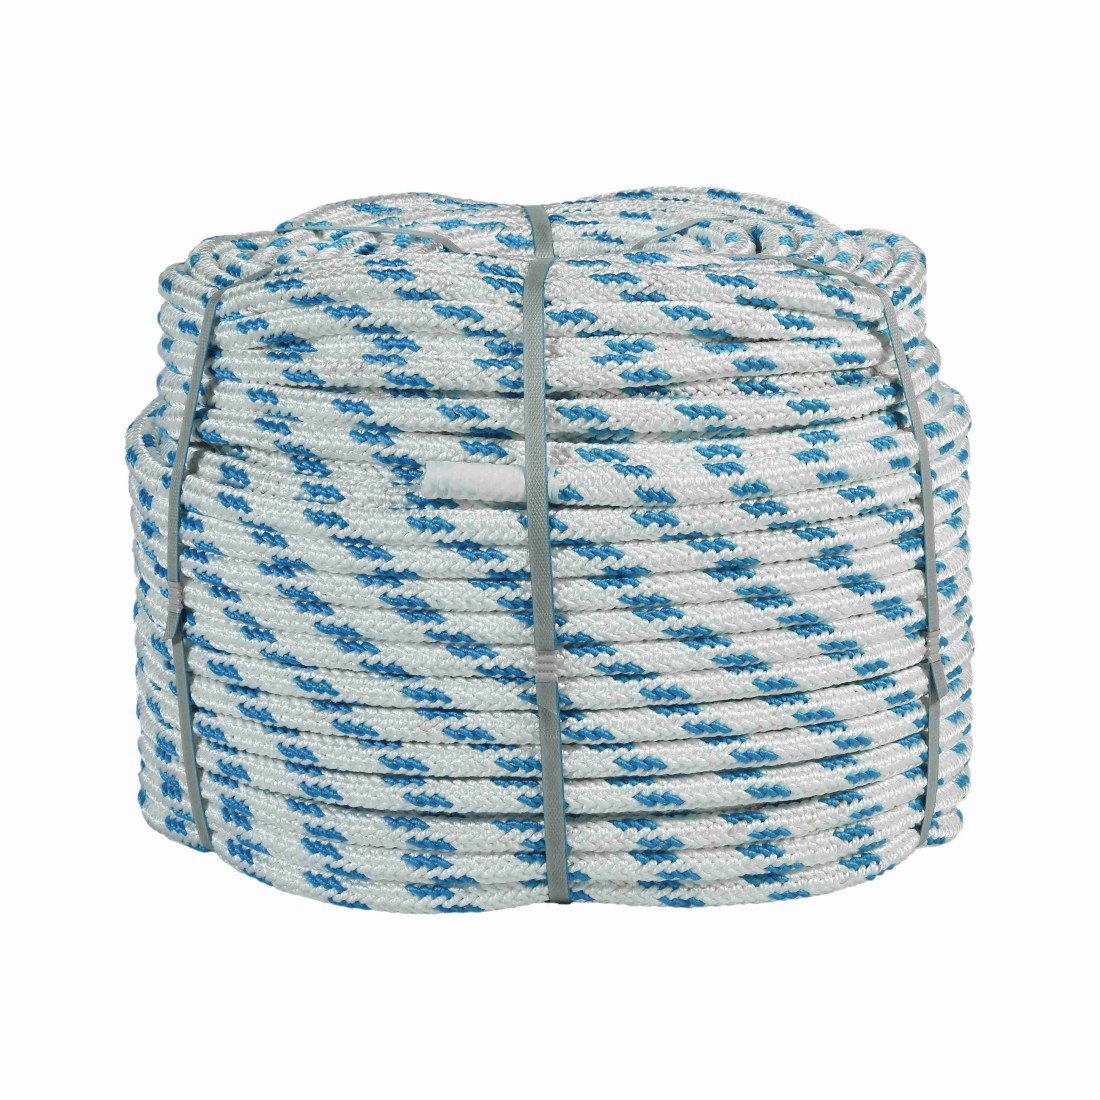 فروش طناب ابریشمی